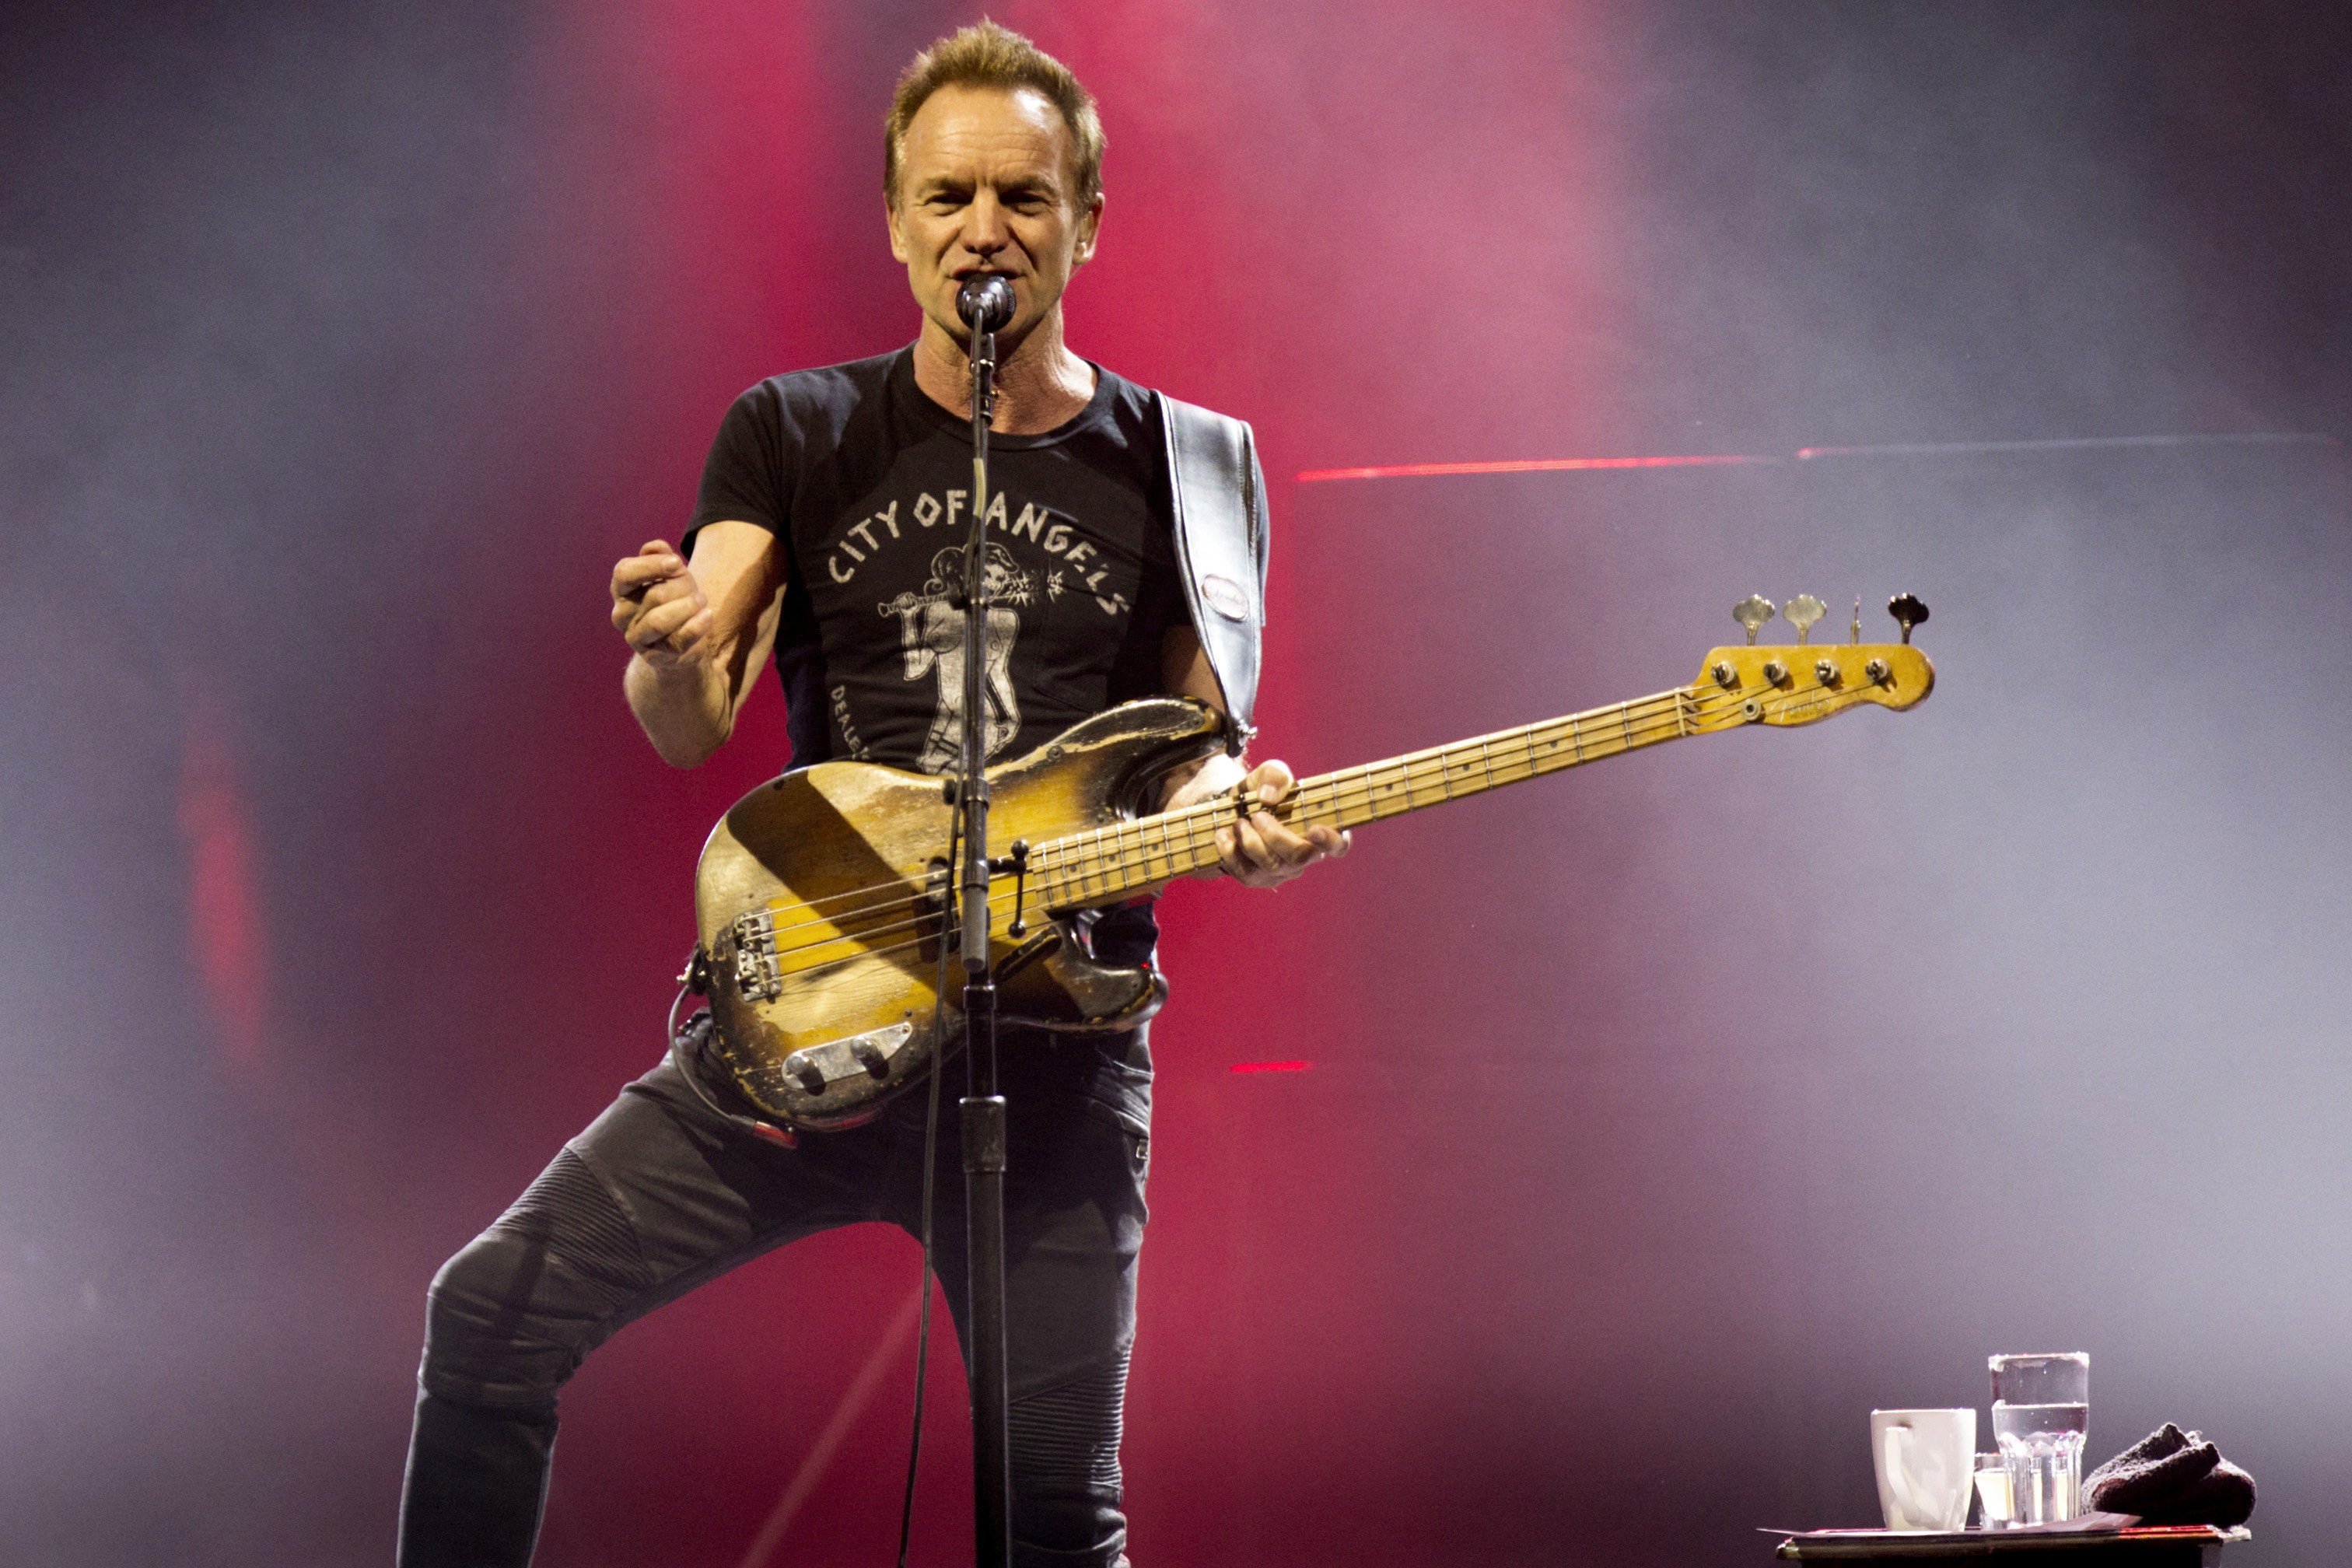 El espíritu de The Police sobrevuela el concierto de Sting en Barcelona